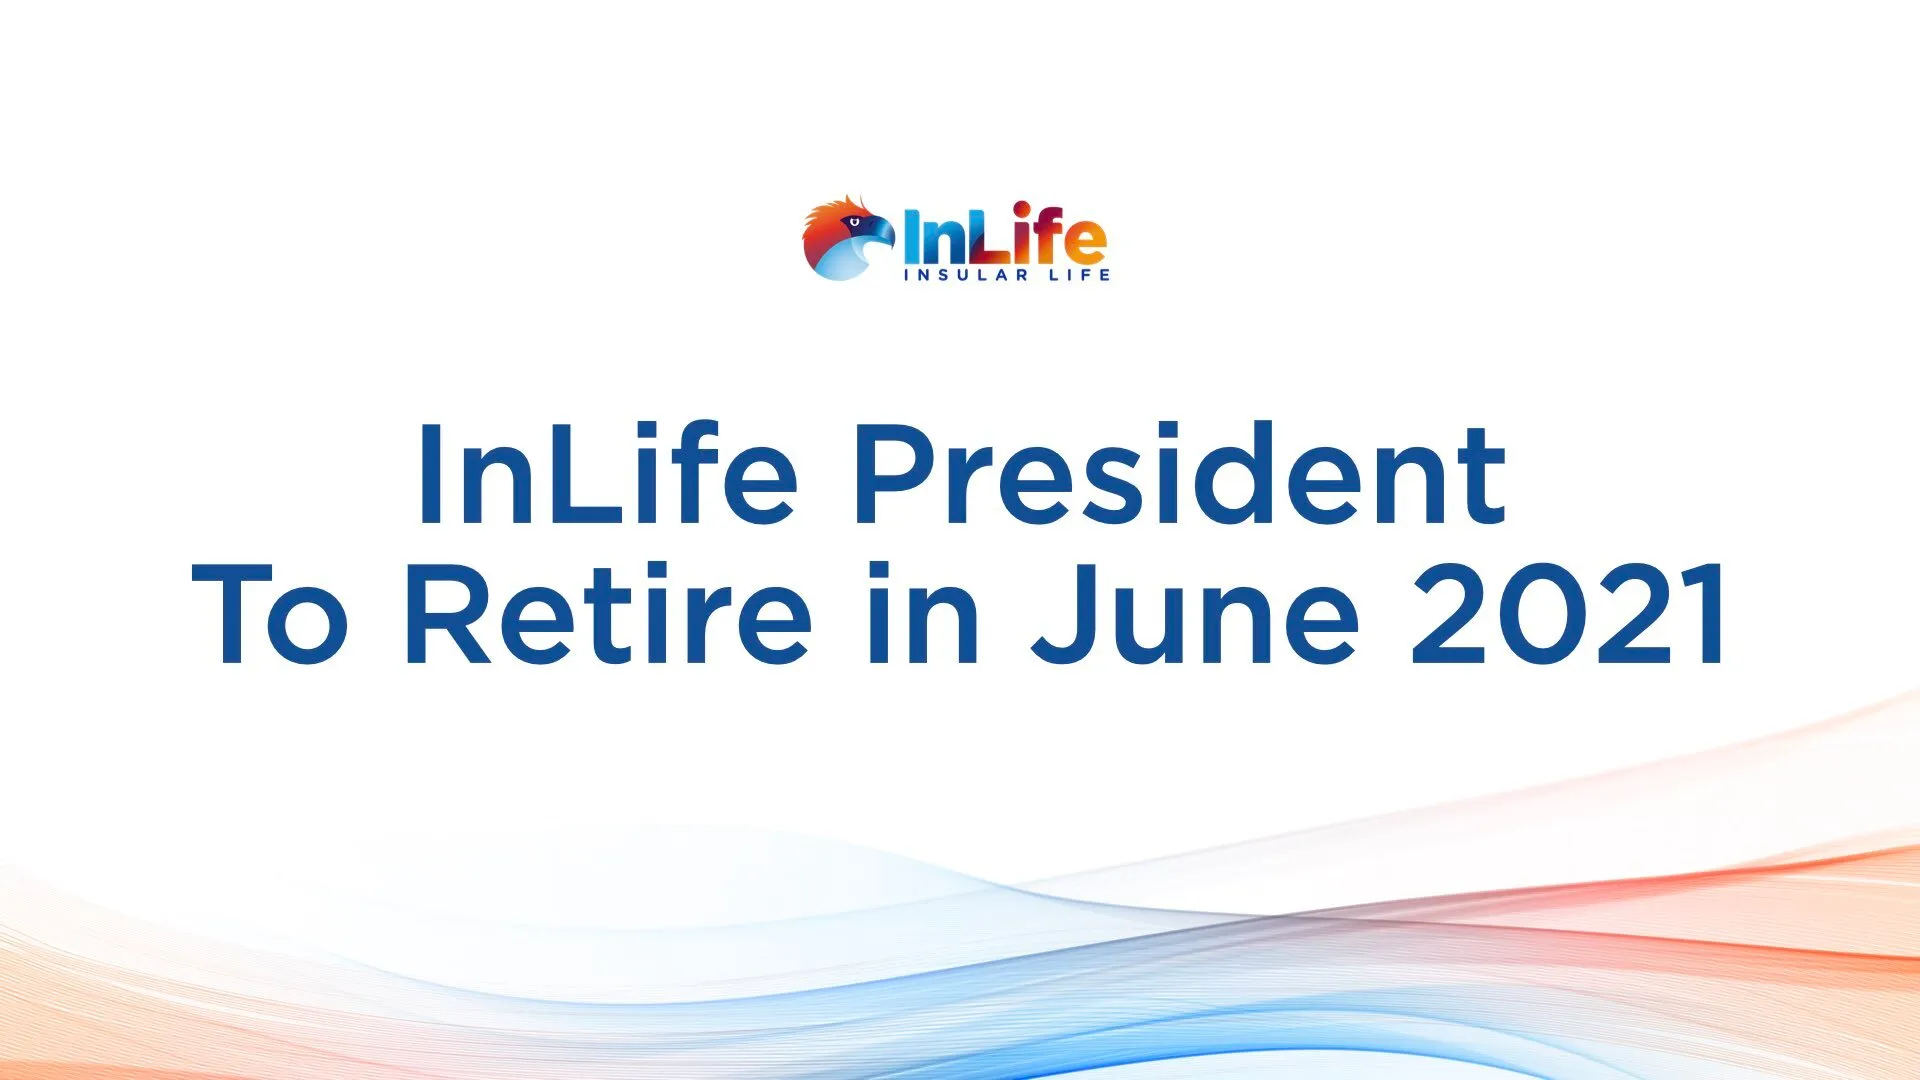 inlife-president-set-to-retire-in-june-2021-new-president-named